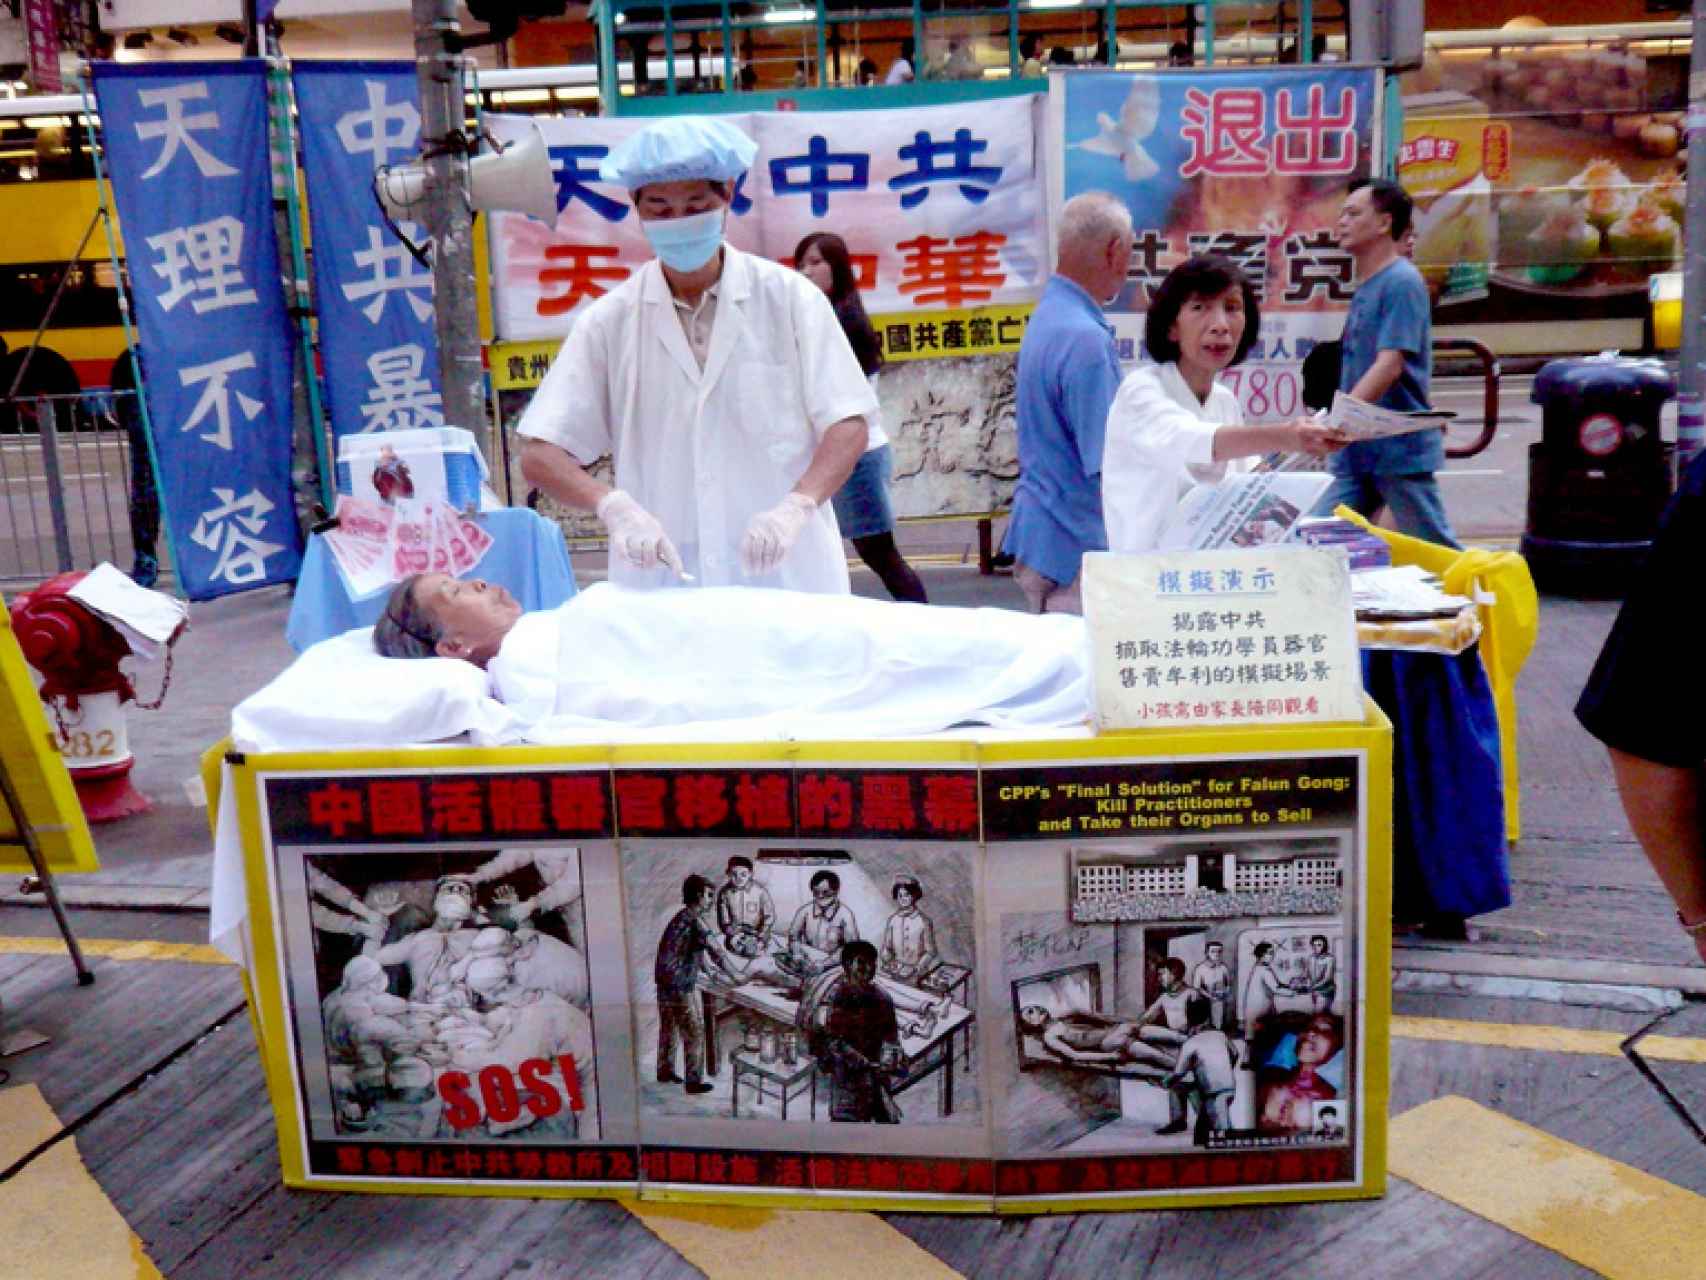 Miembros de Fulang Gong simulan una extracción de órganos como protesta.